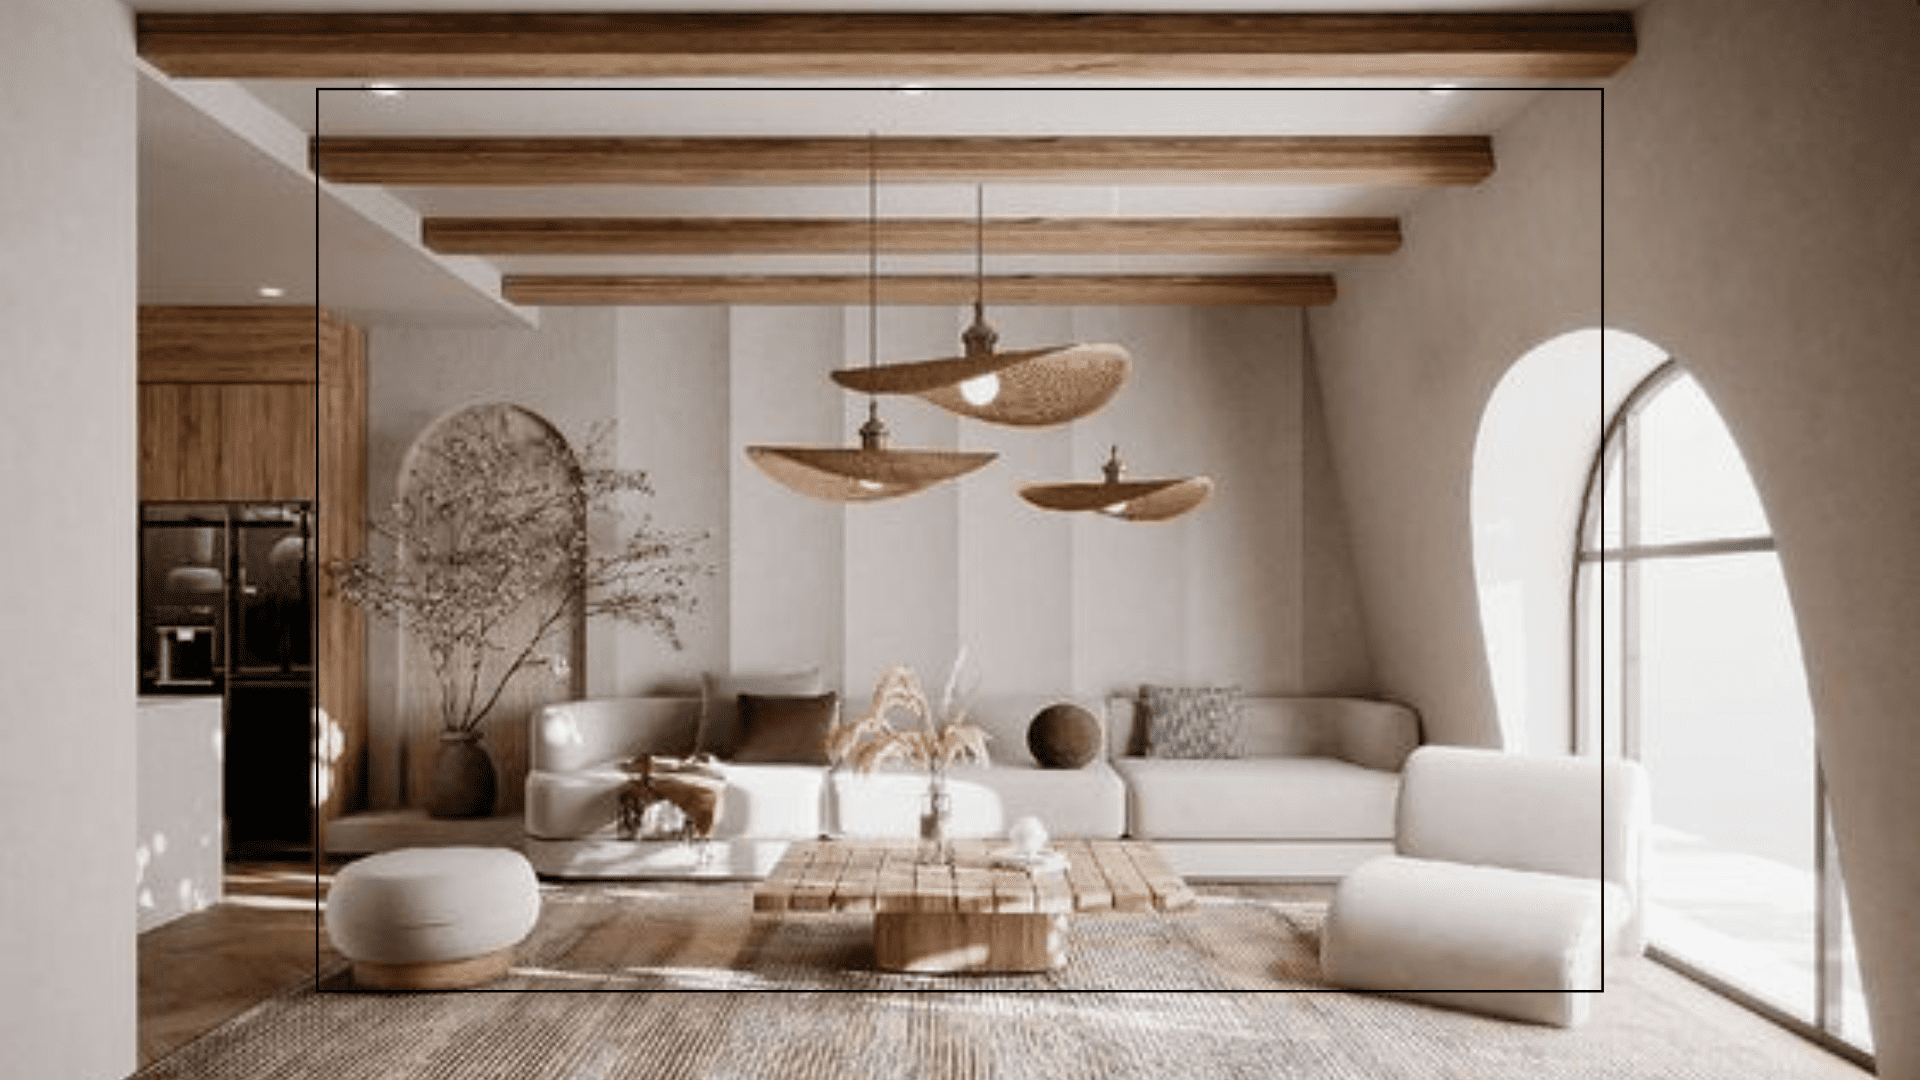 Sala com sofás brancos e objetos decorativos na cor marrom para ilustrar os tipos de decoração